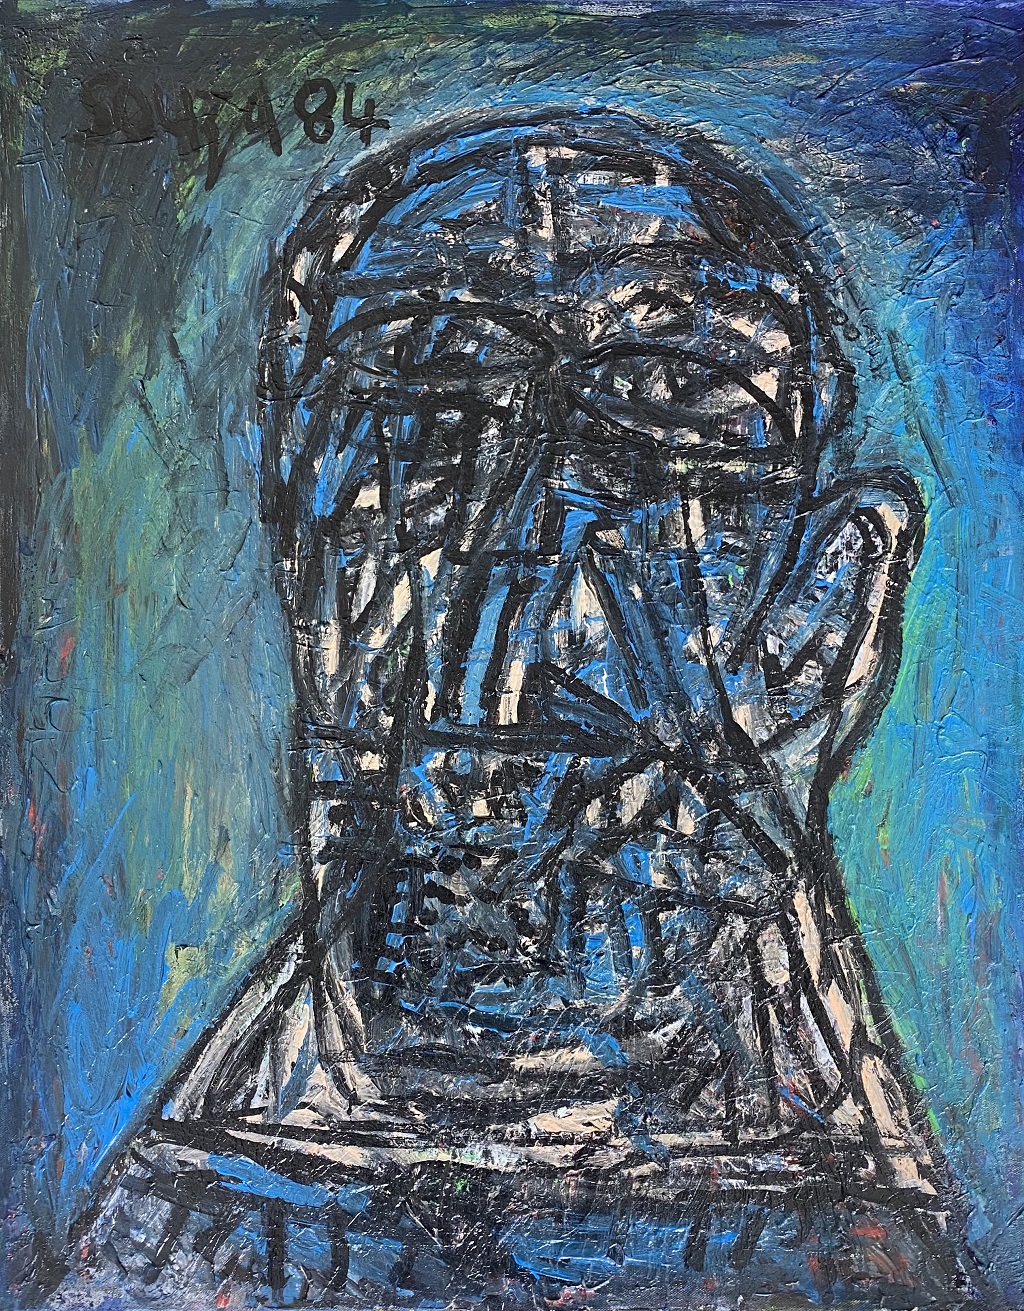 Portrat it in Blue – F N Souza, 1984